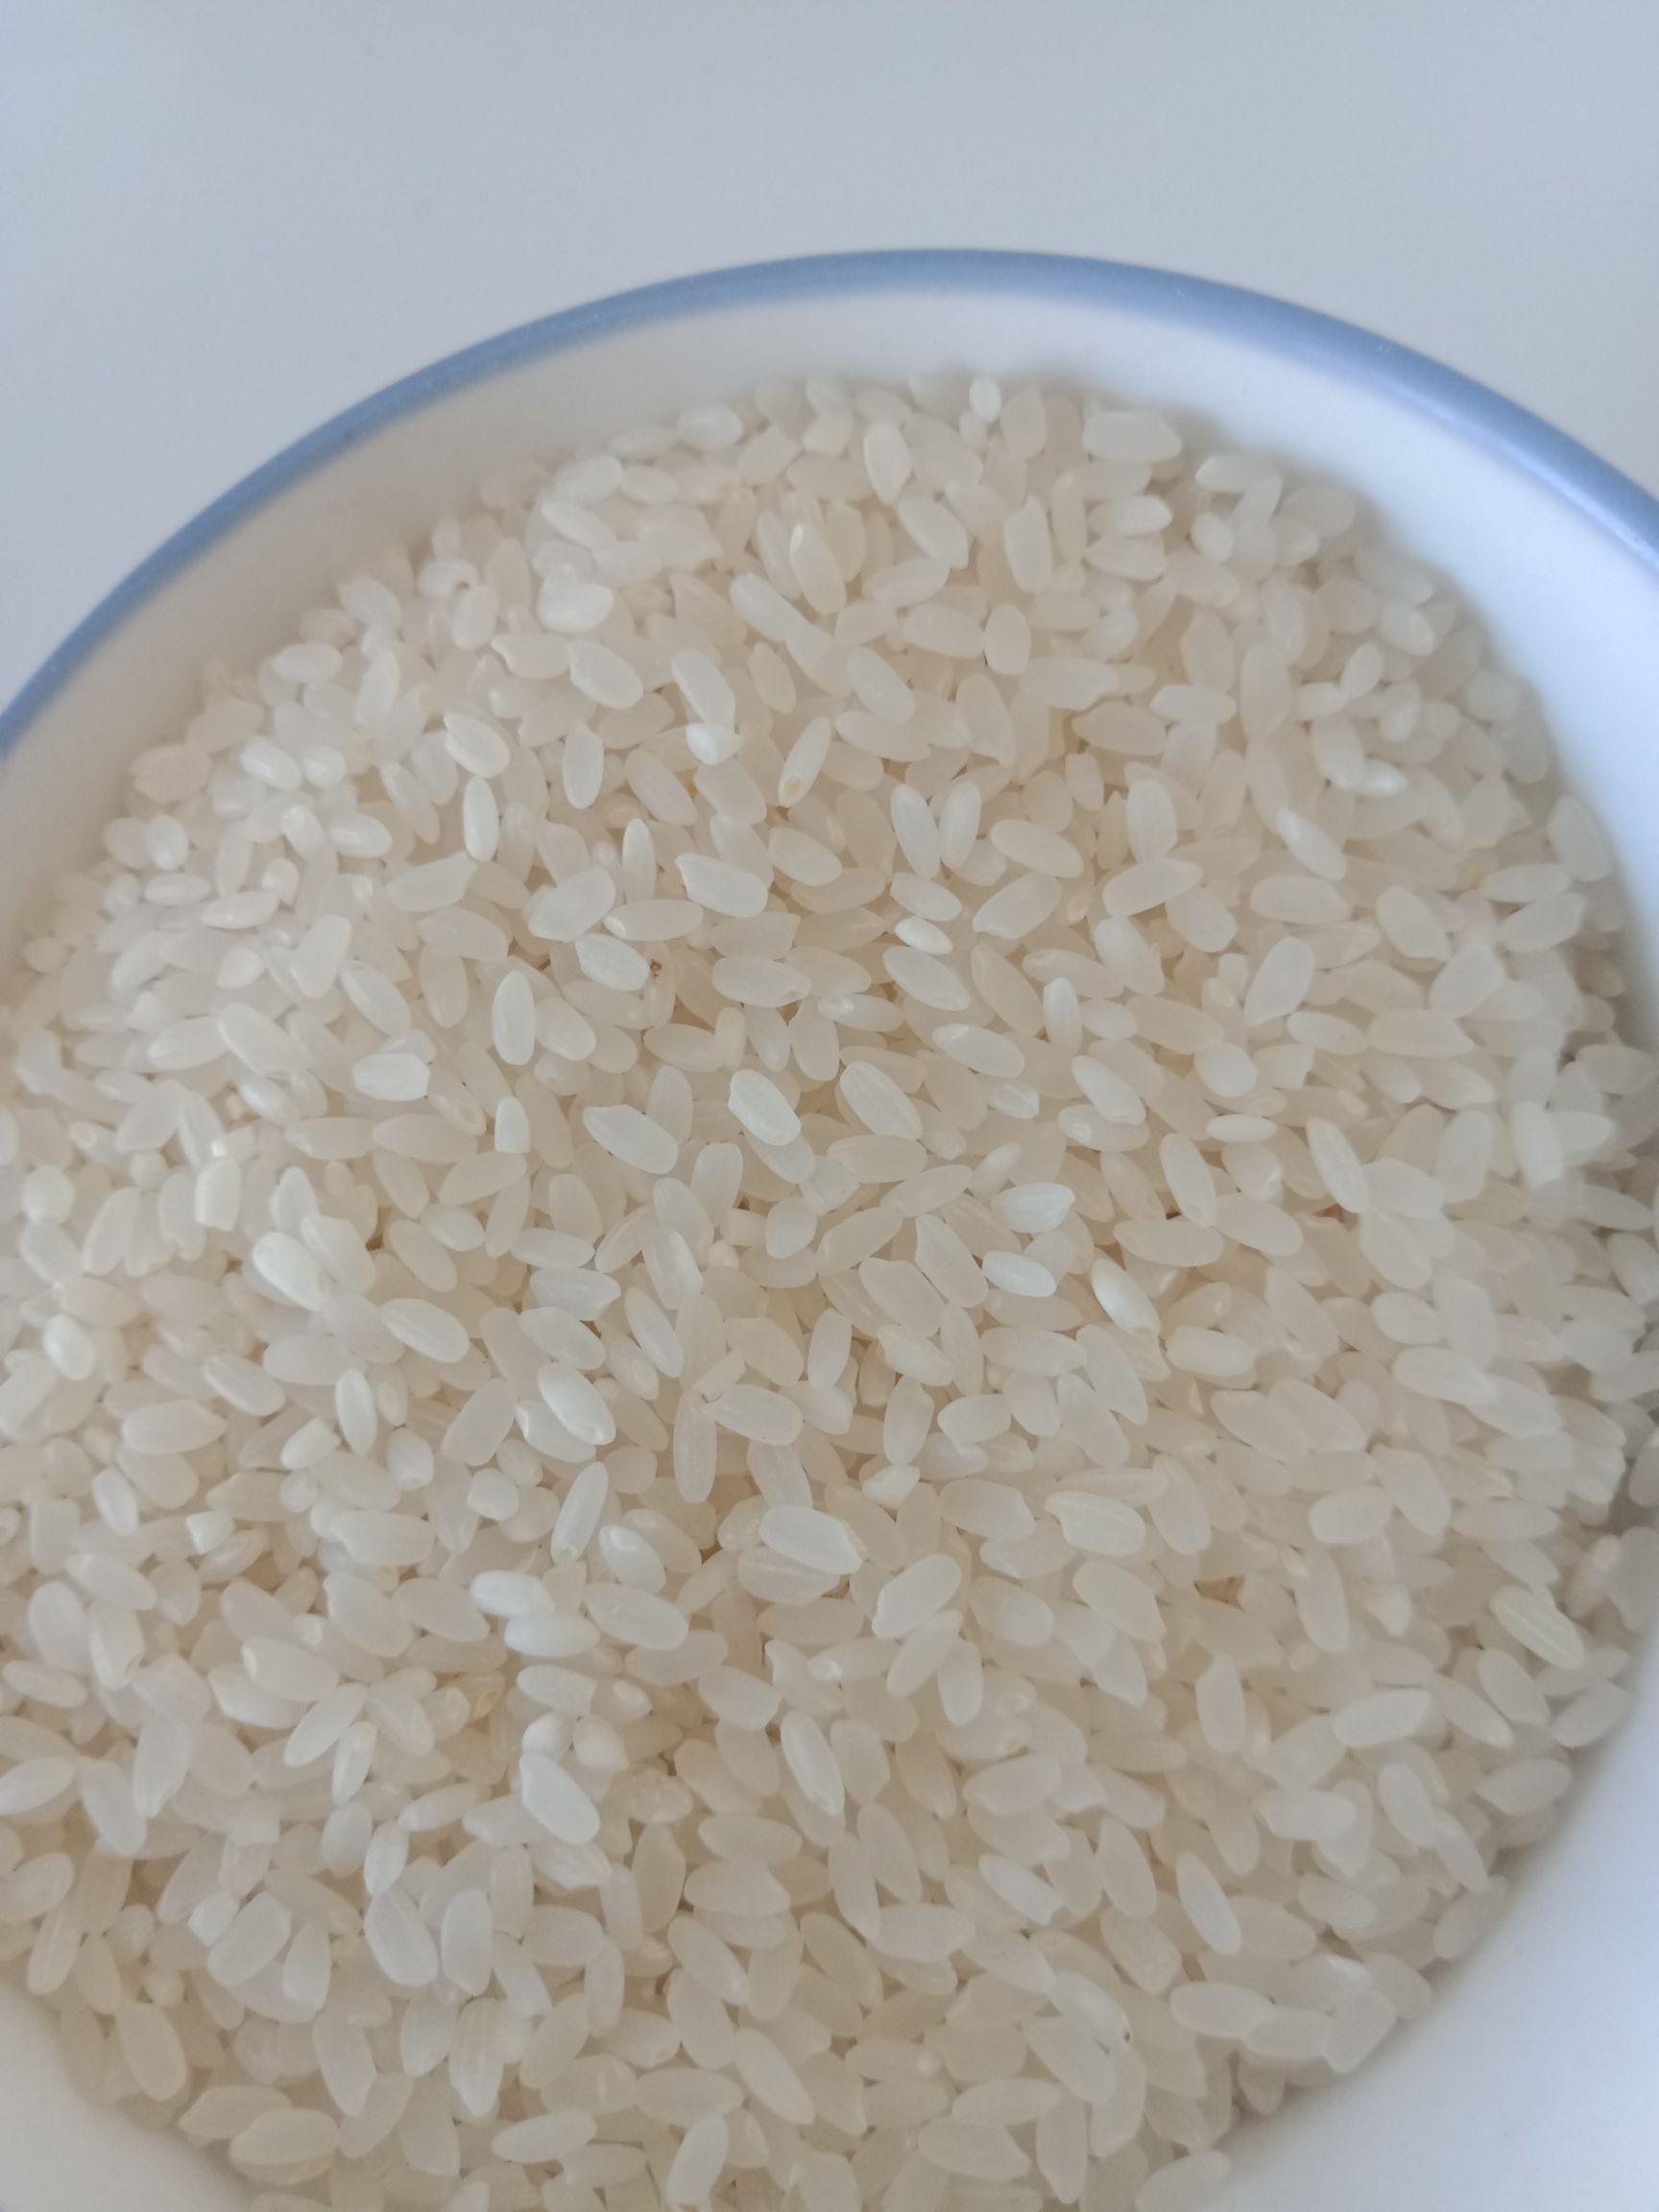 绥粳18稻种图片